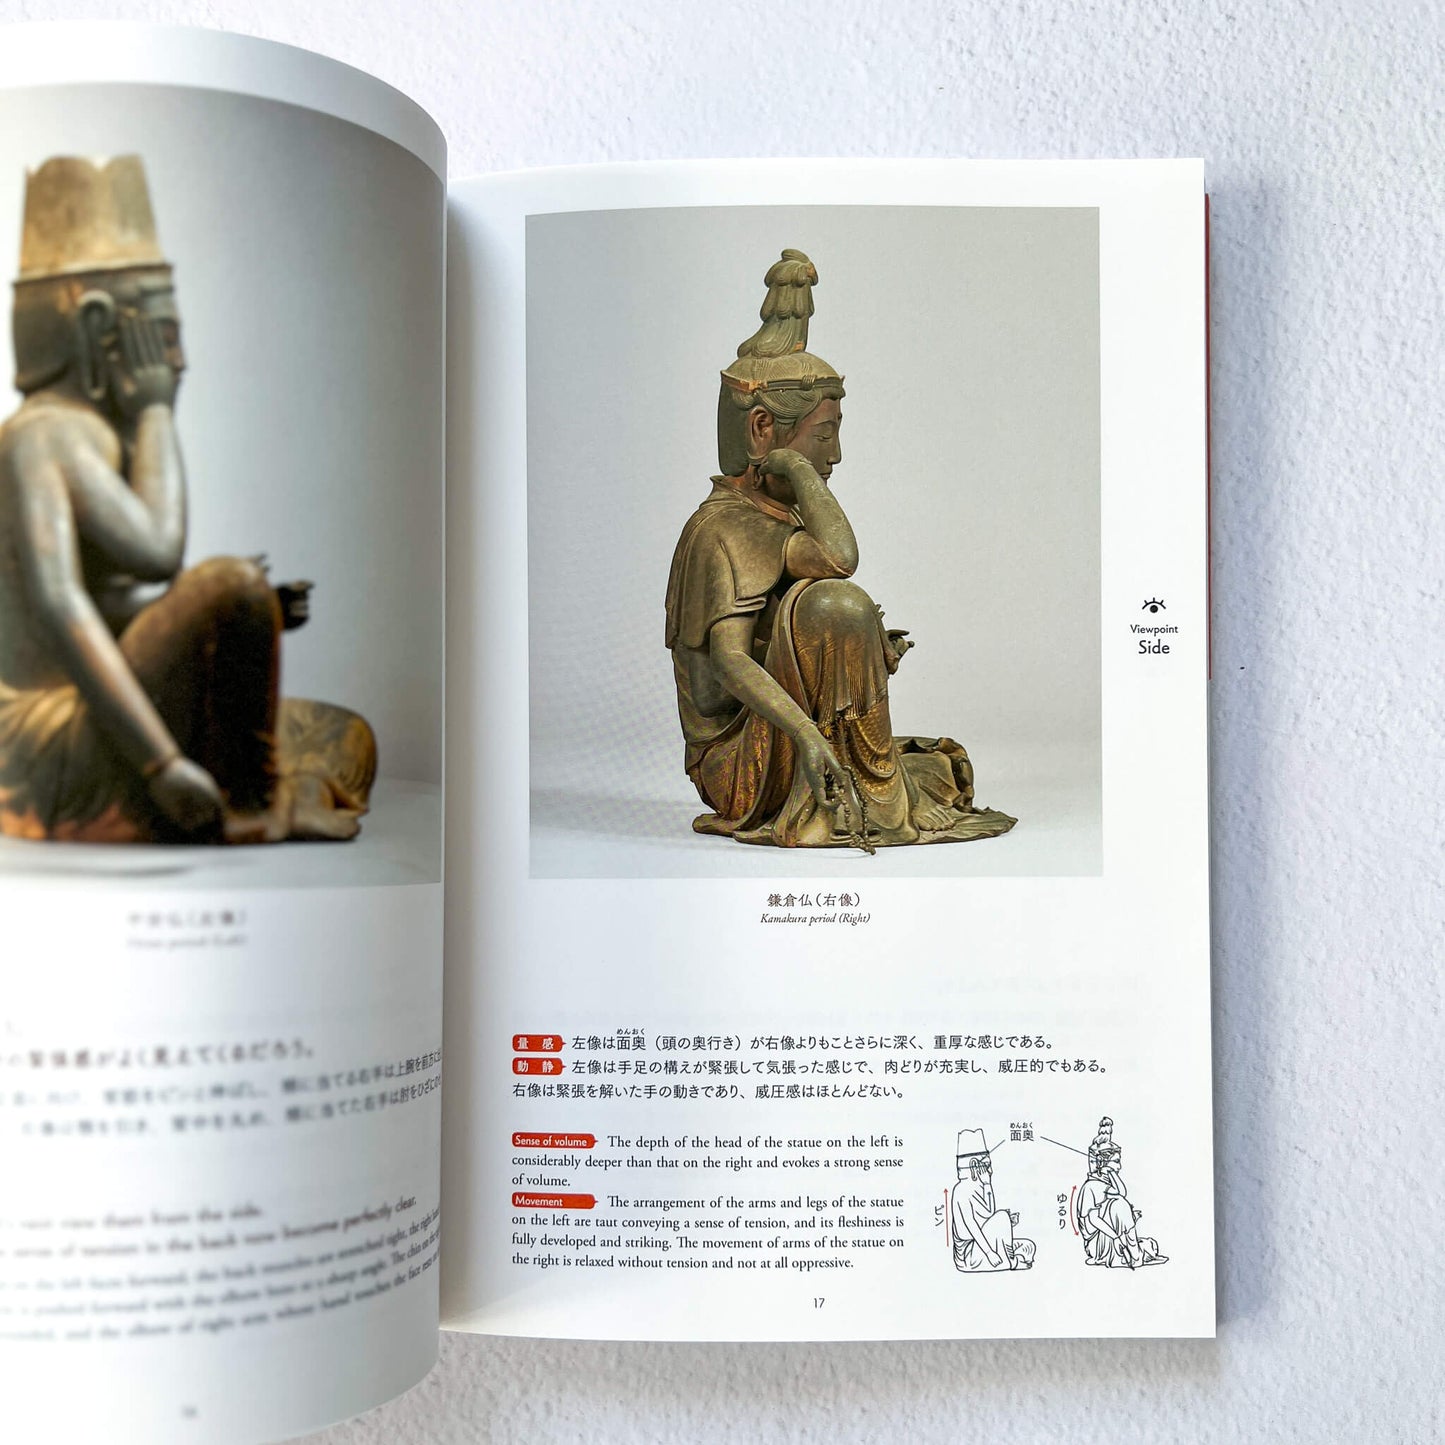 Understanding Japanese Buddhist Sculpture through Visual Comparison